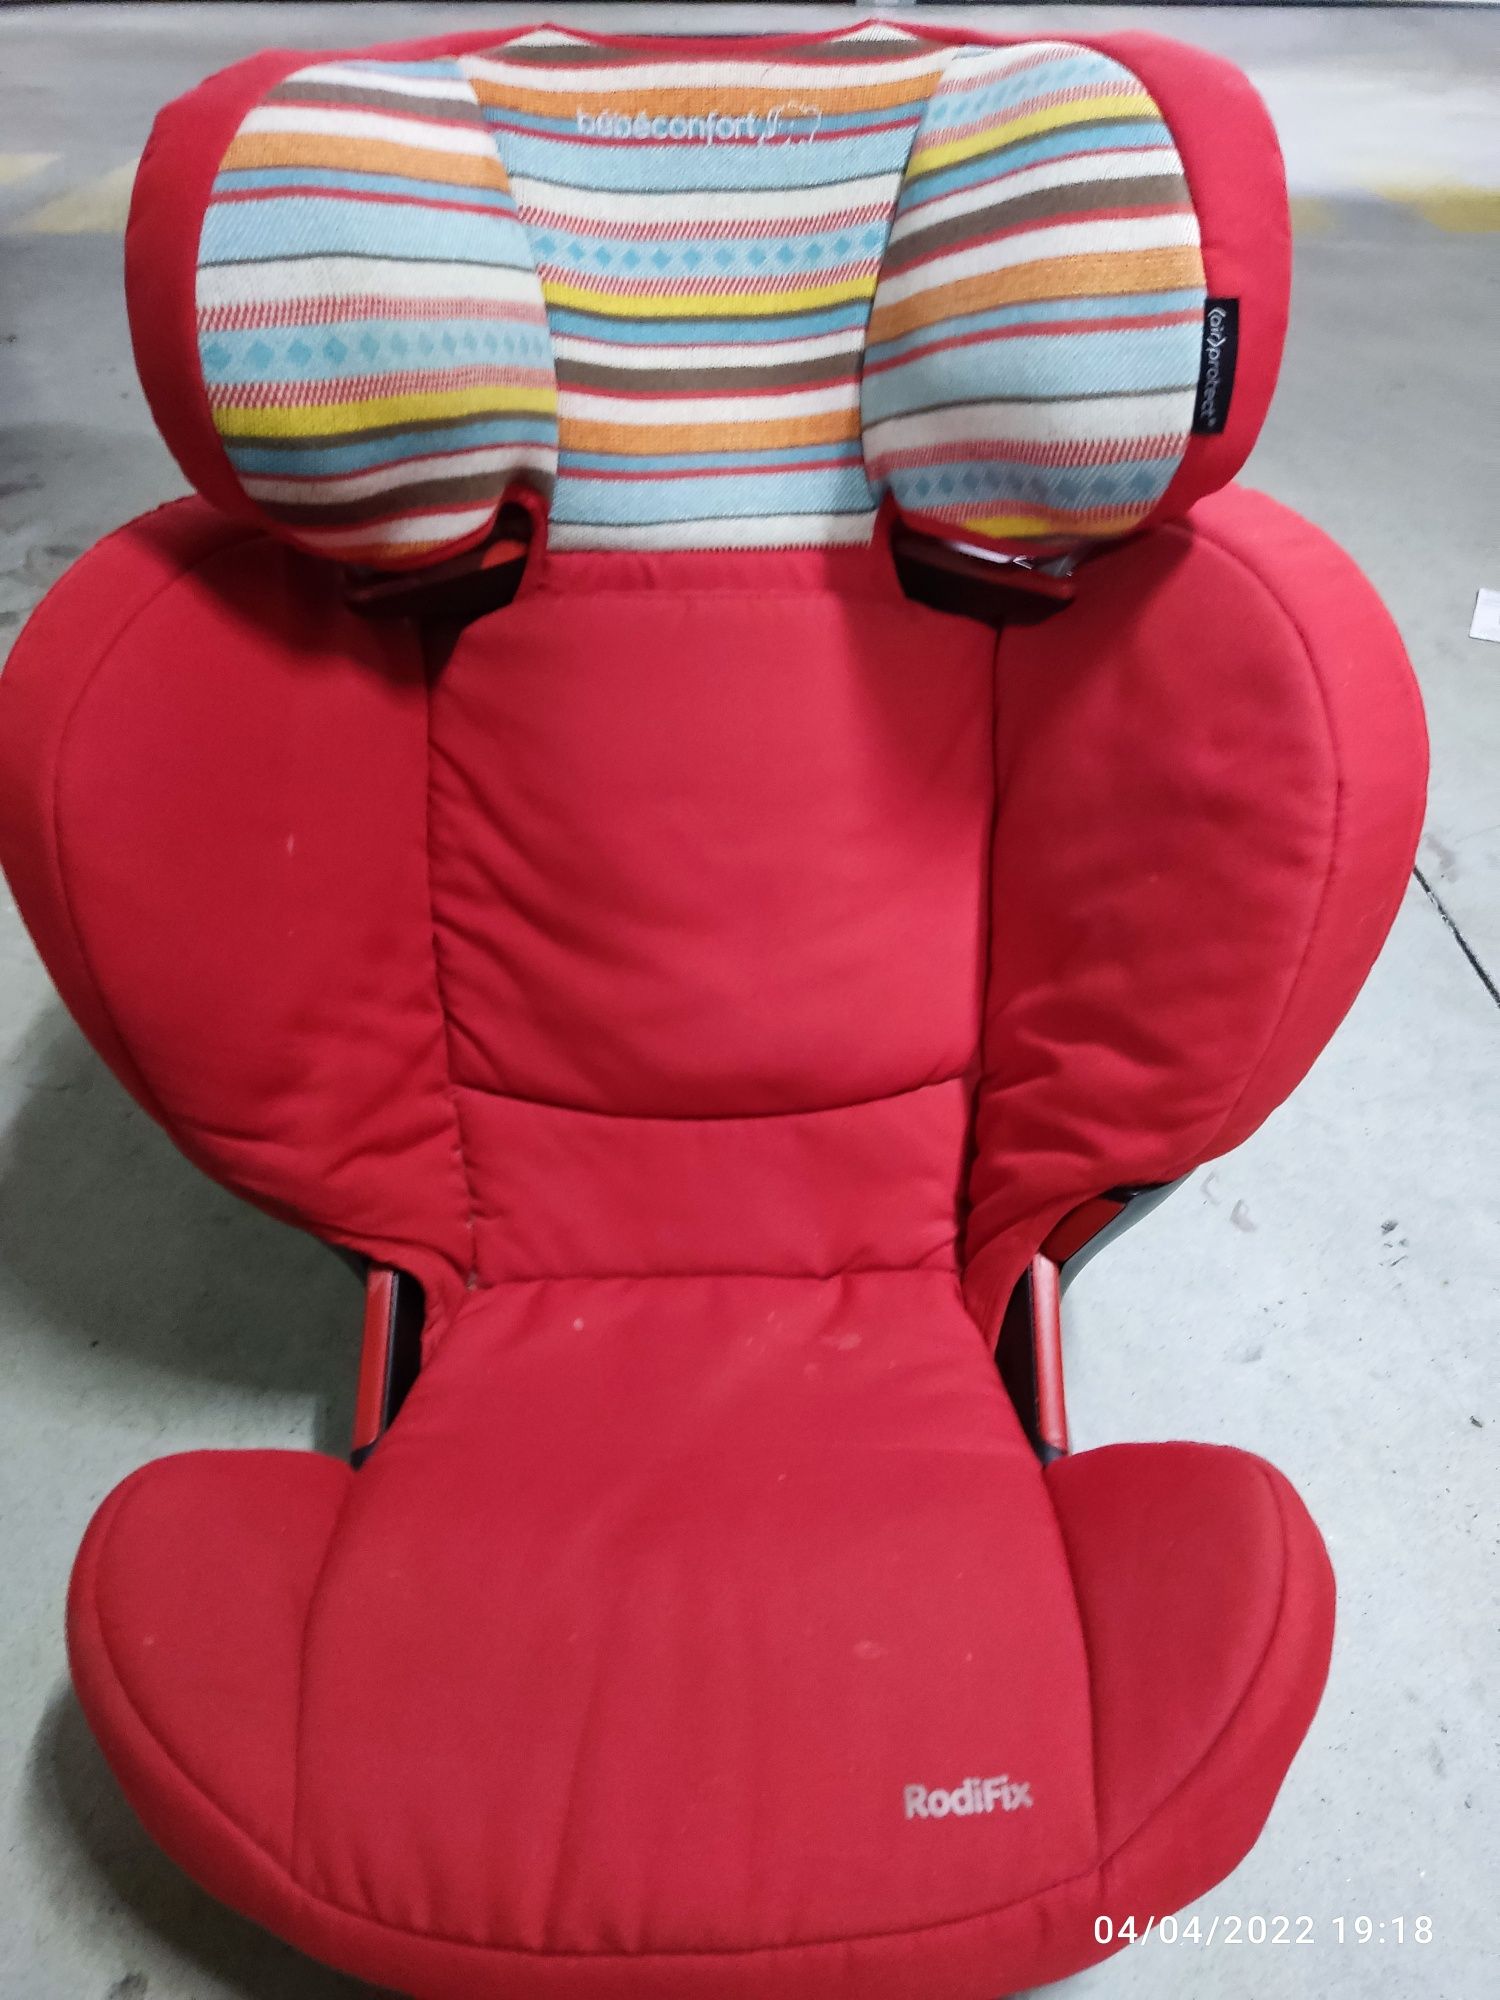 Cadeira auto bébéconfort